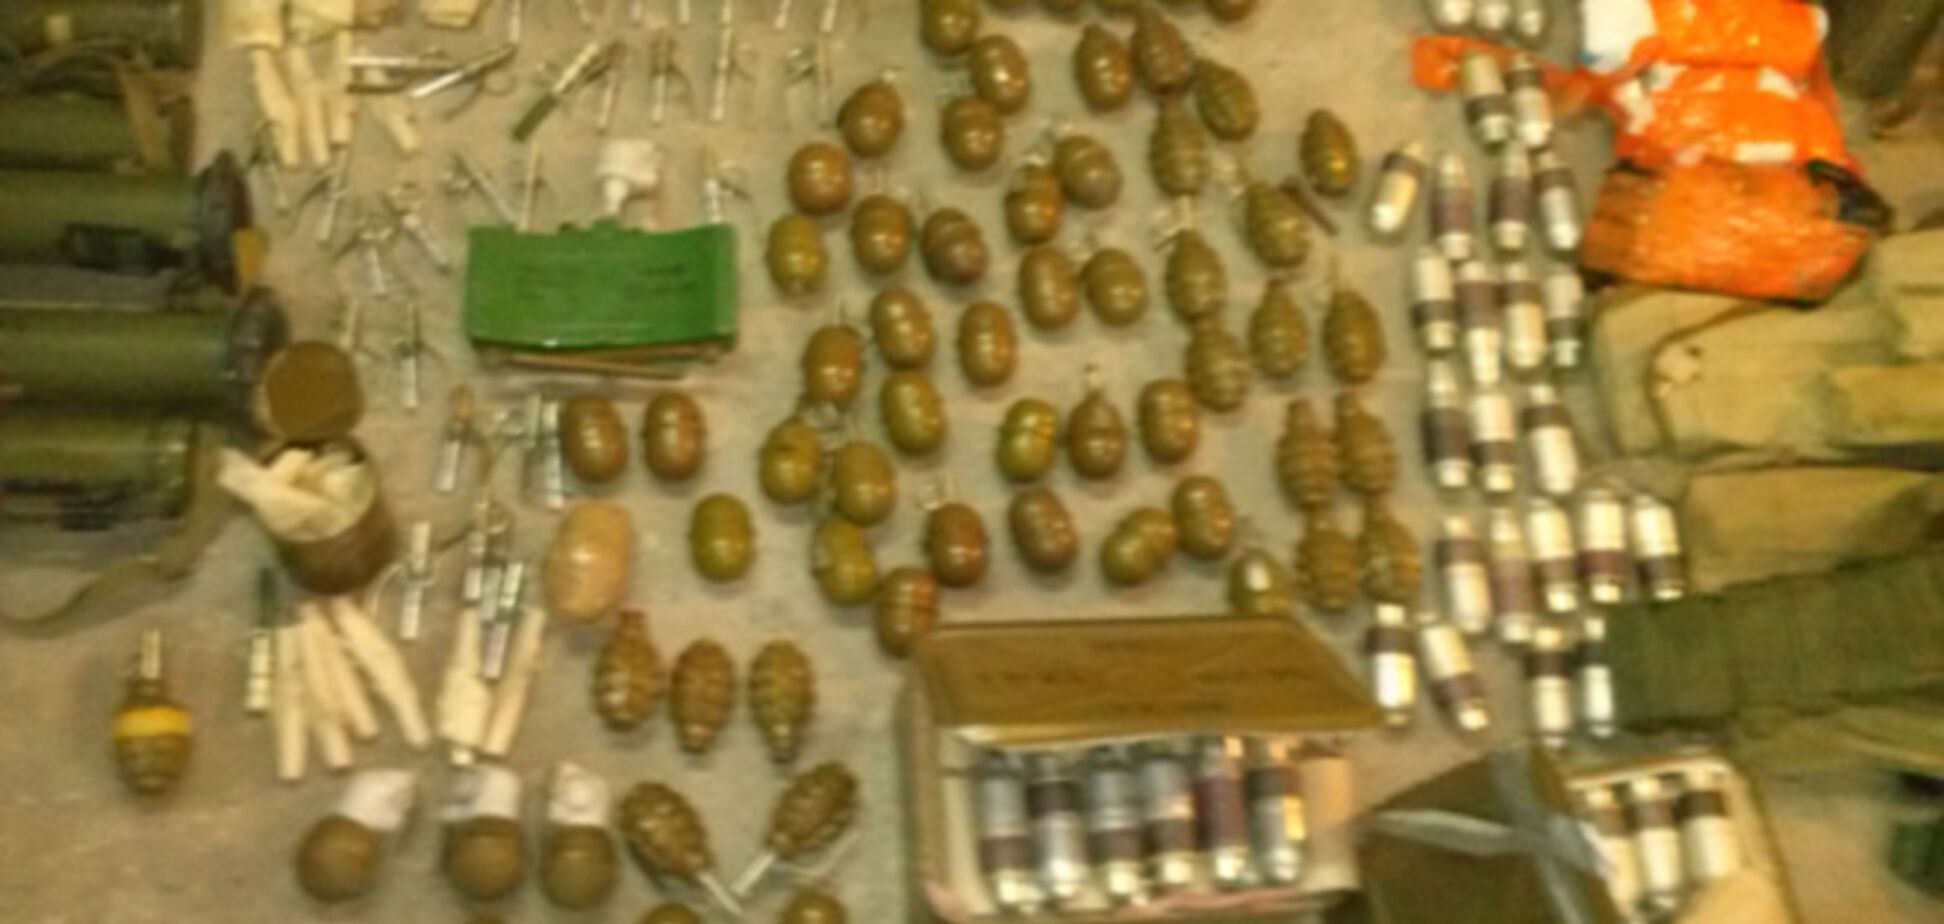 В гараже жителя Днепропетровска обнаружен склад оружия